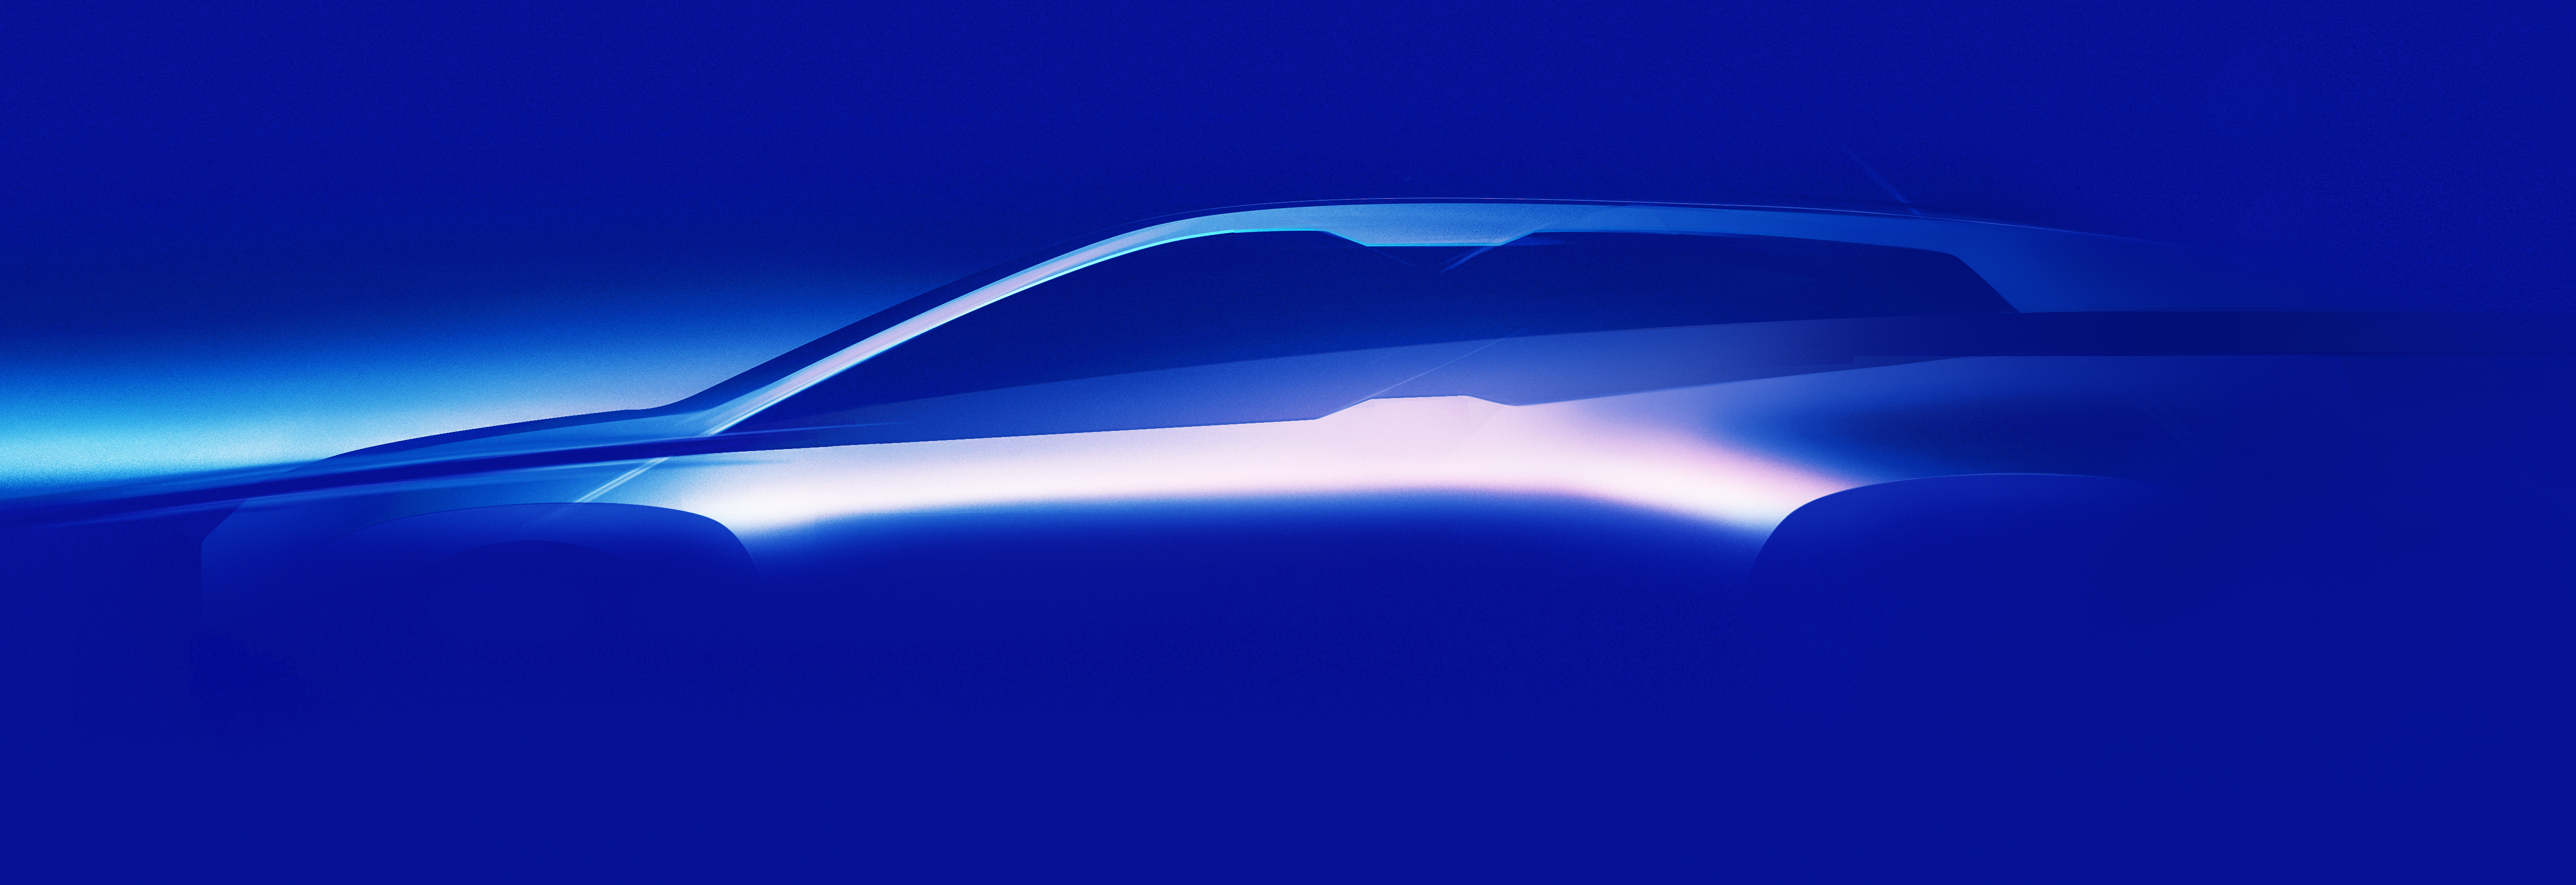 Prime immagini della BMW iNext. Il futuro della mobilità sostenibile si vicina a grandi passi.